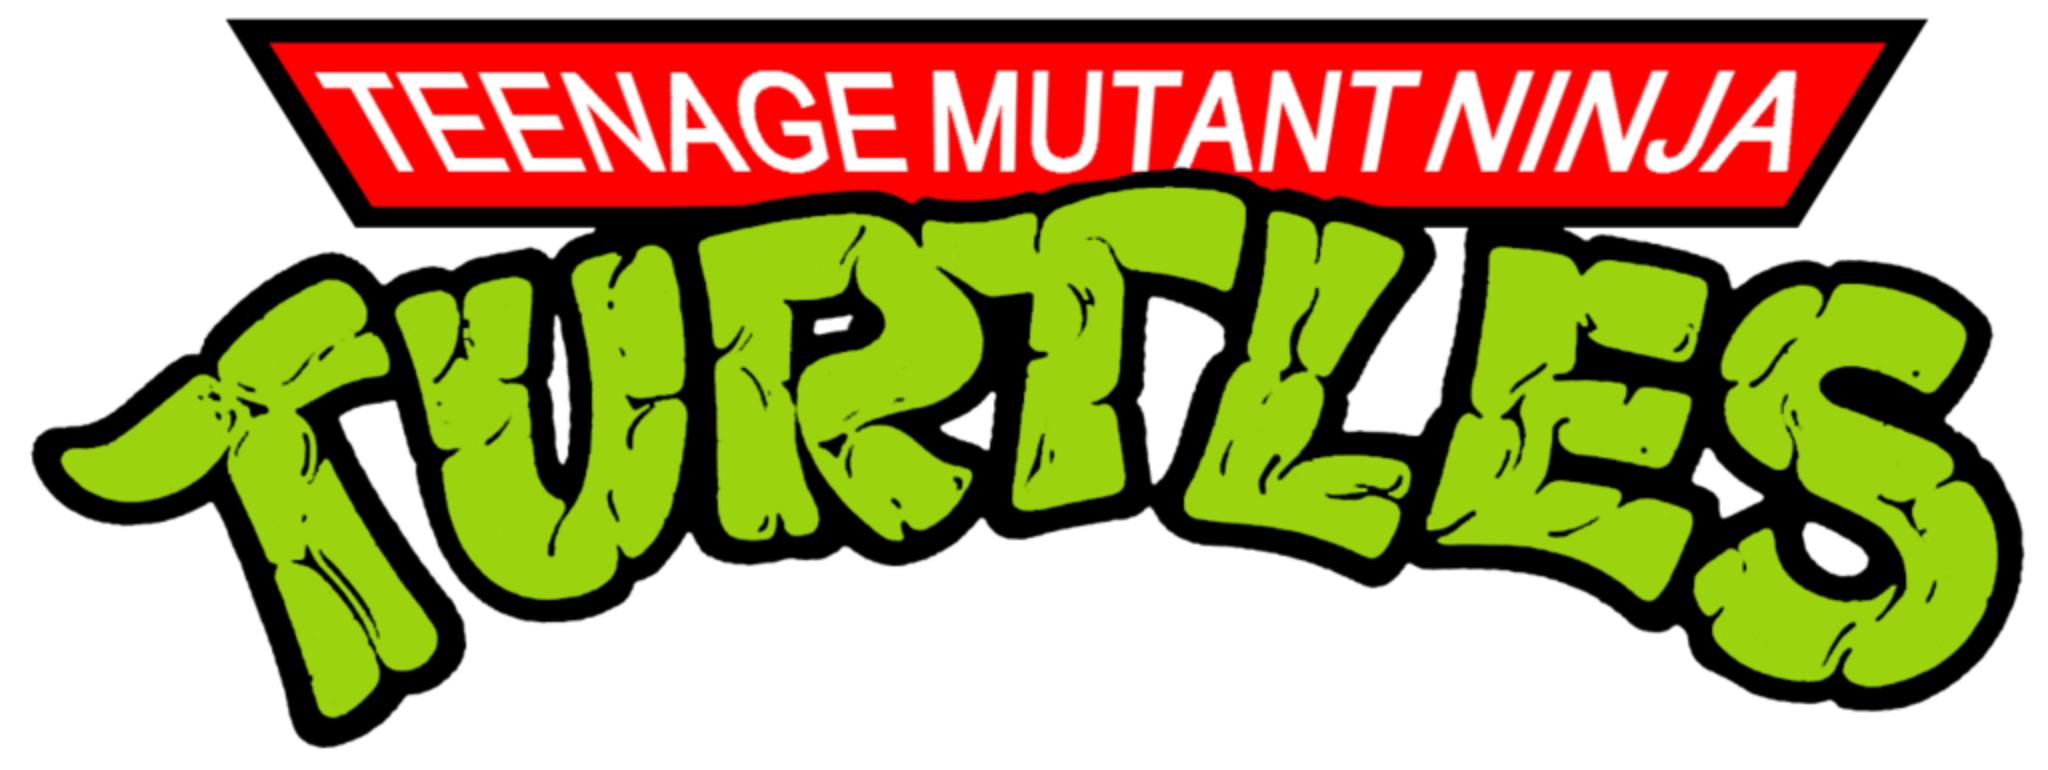 Teenage Mutant Ninja Turtles 1987 Volume 1 (8 DVDs Box Set)